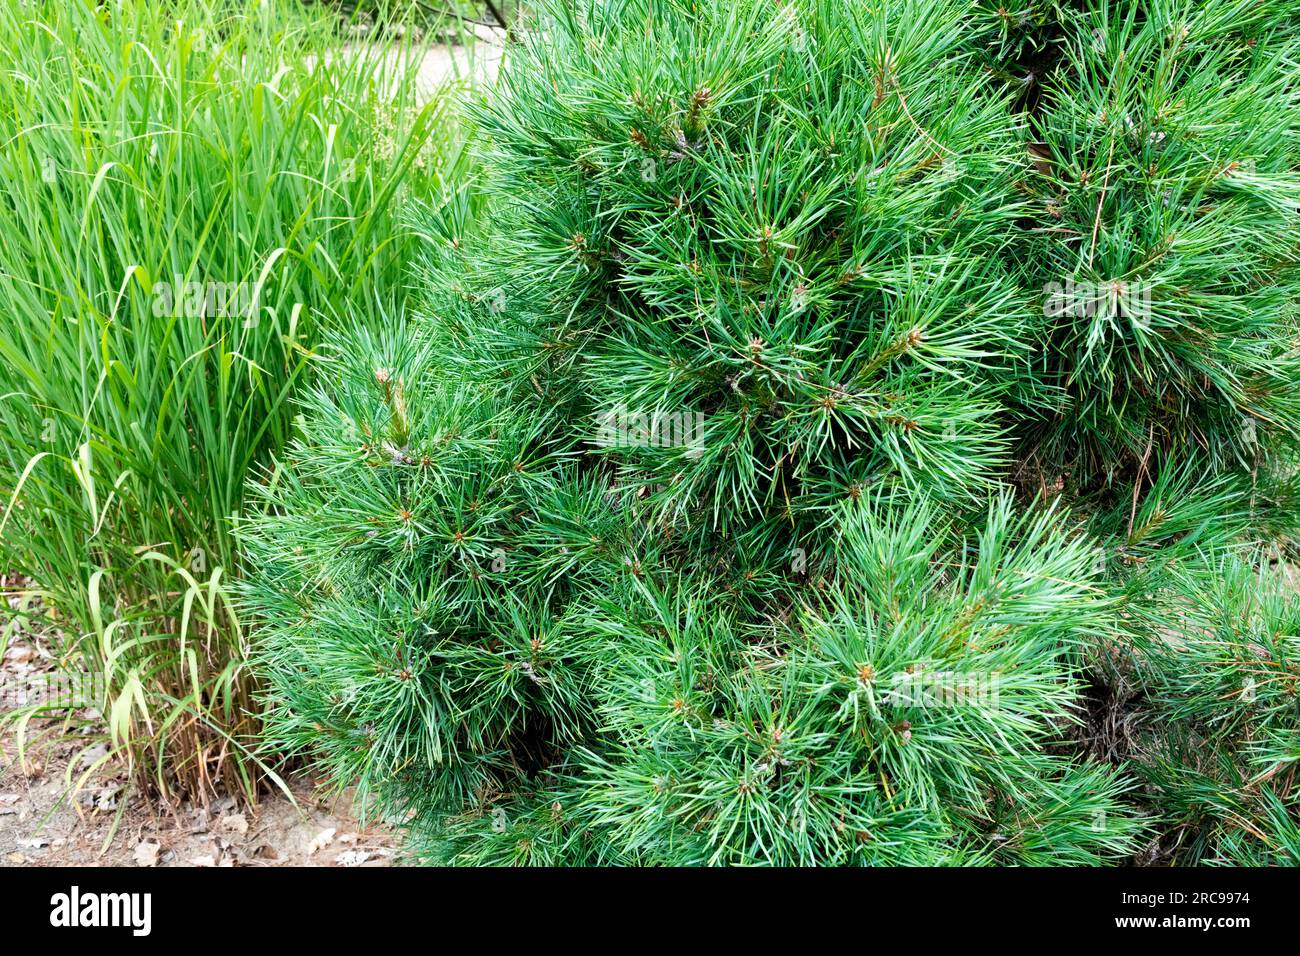 Scotch Pine Pinus sylvestris "Viridis Compacta" in garden Stock Photo